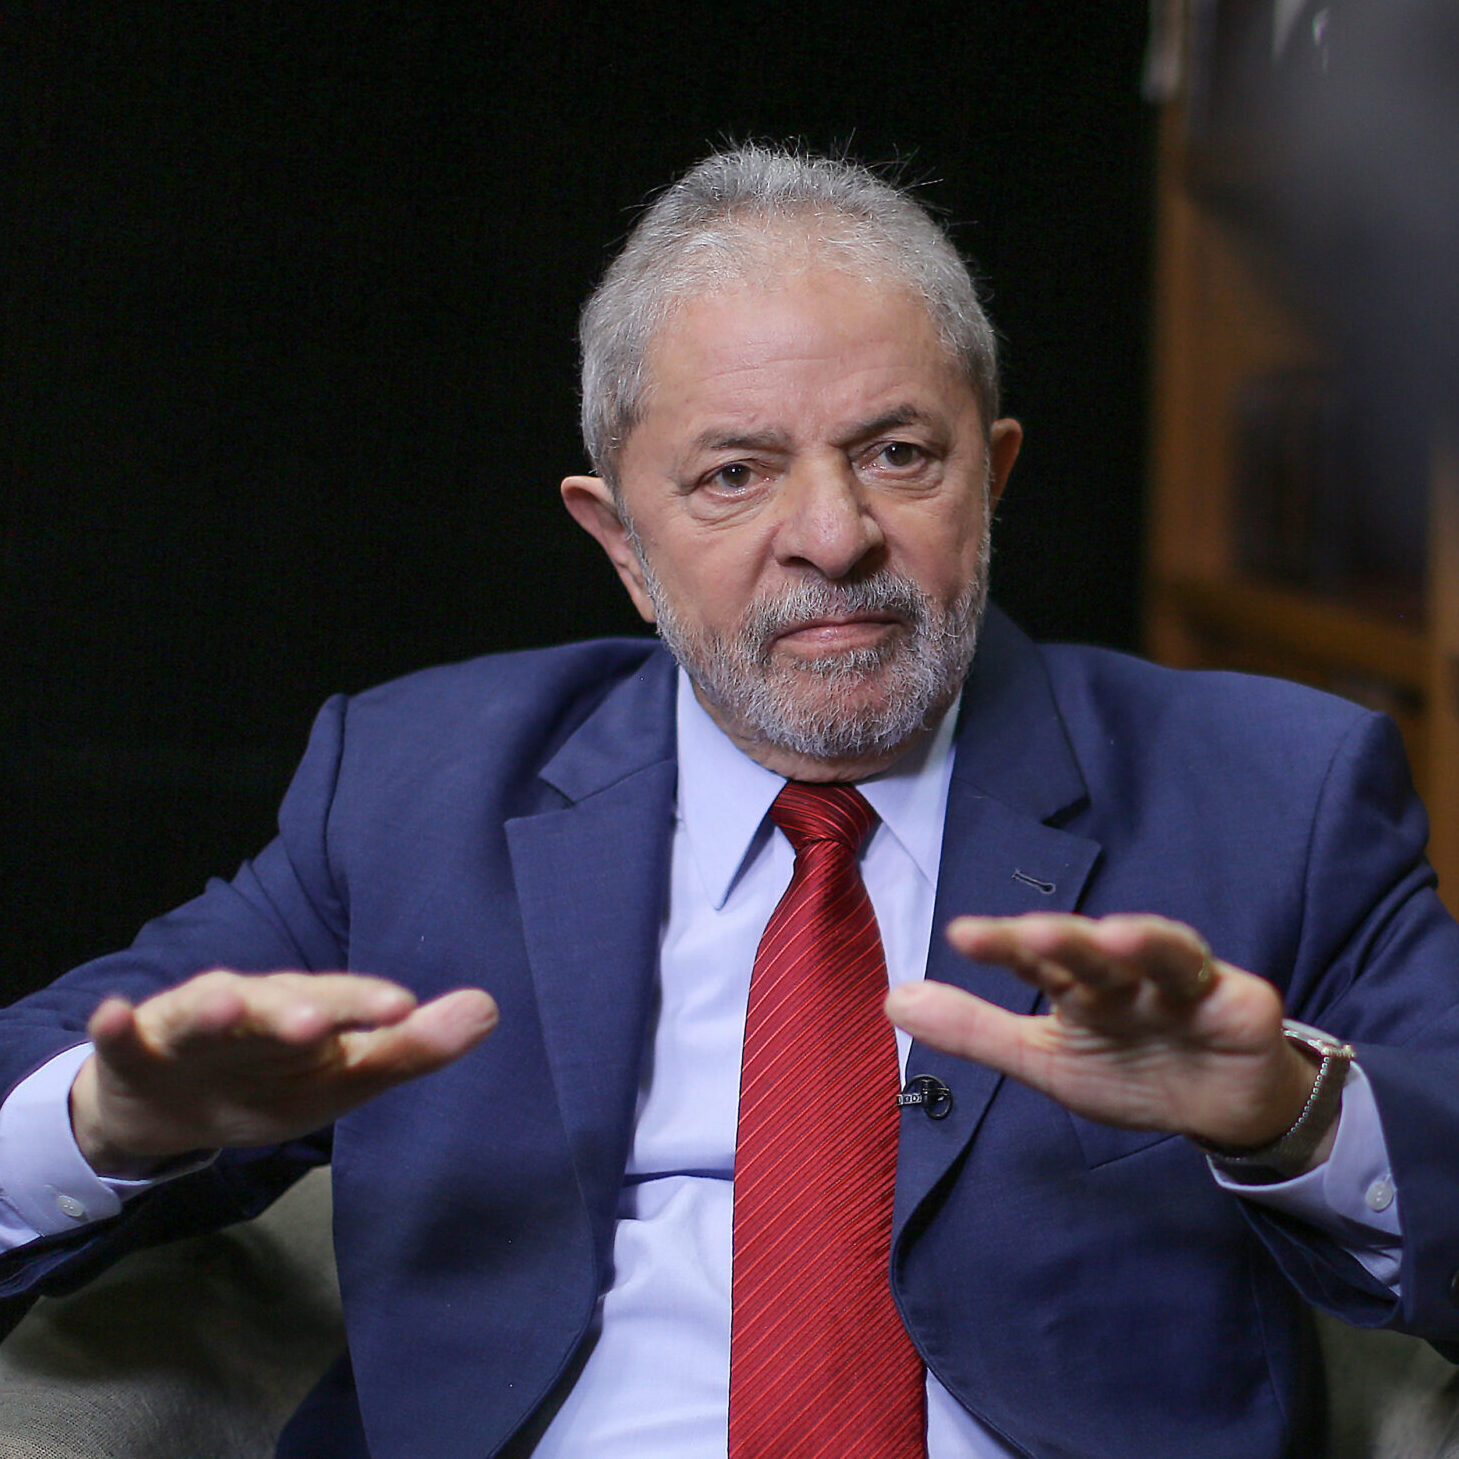 No primeiro discurso como presidente Lula falou sobre as medidas econômicas do novo governo Lula, apontando uma intervenção maior